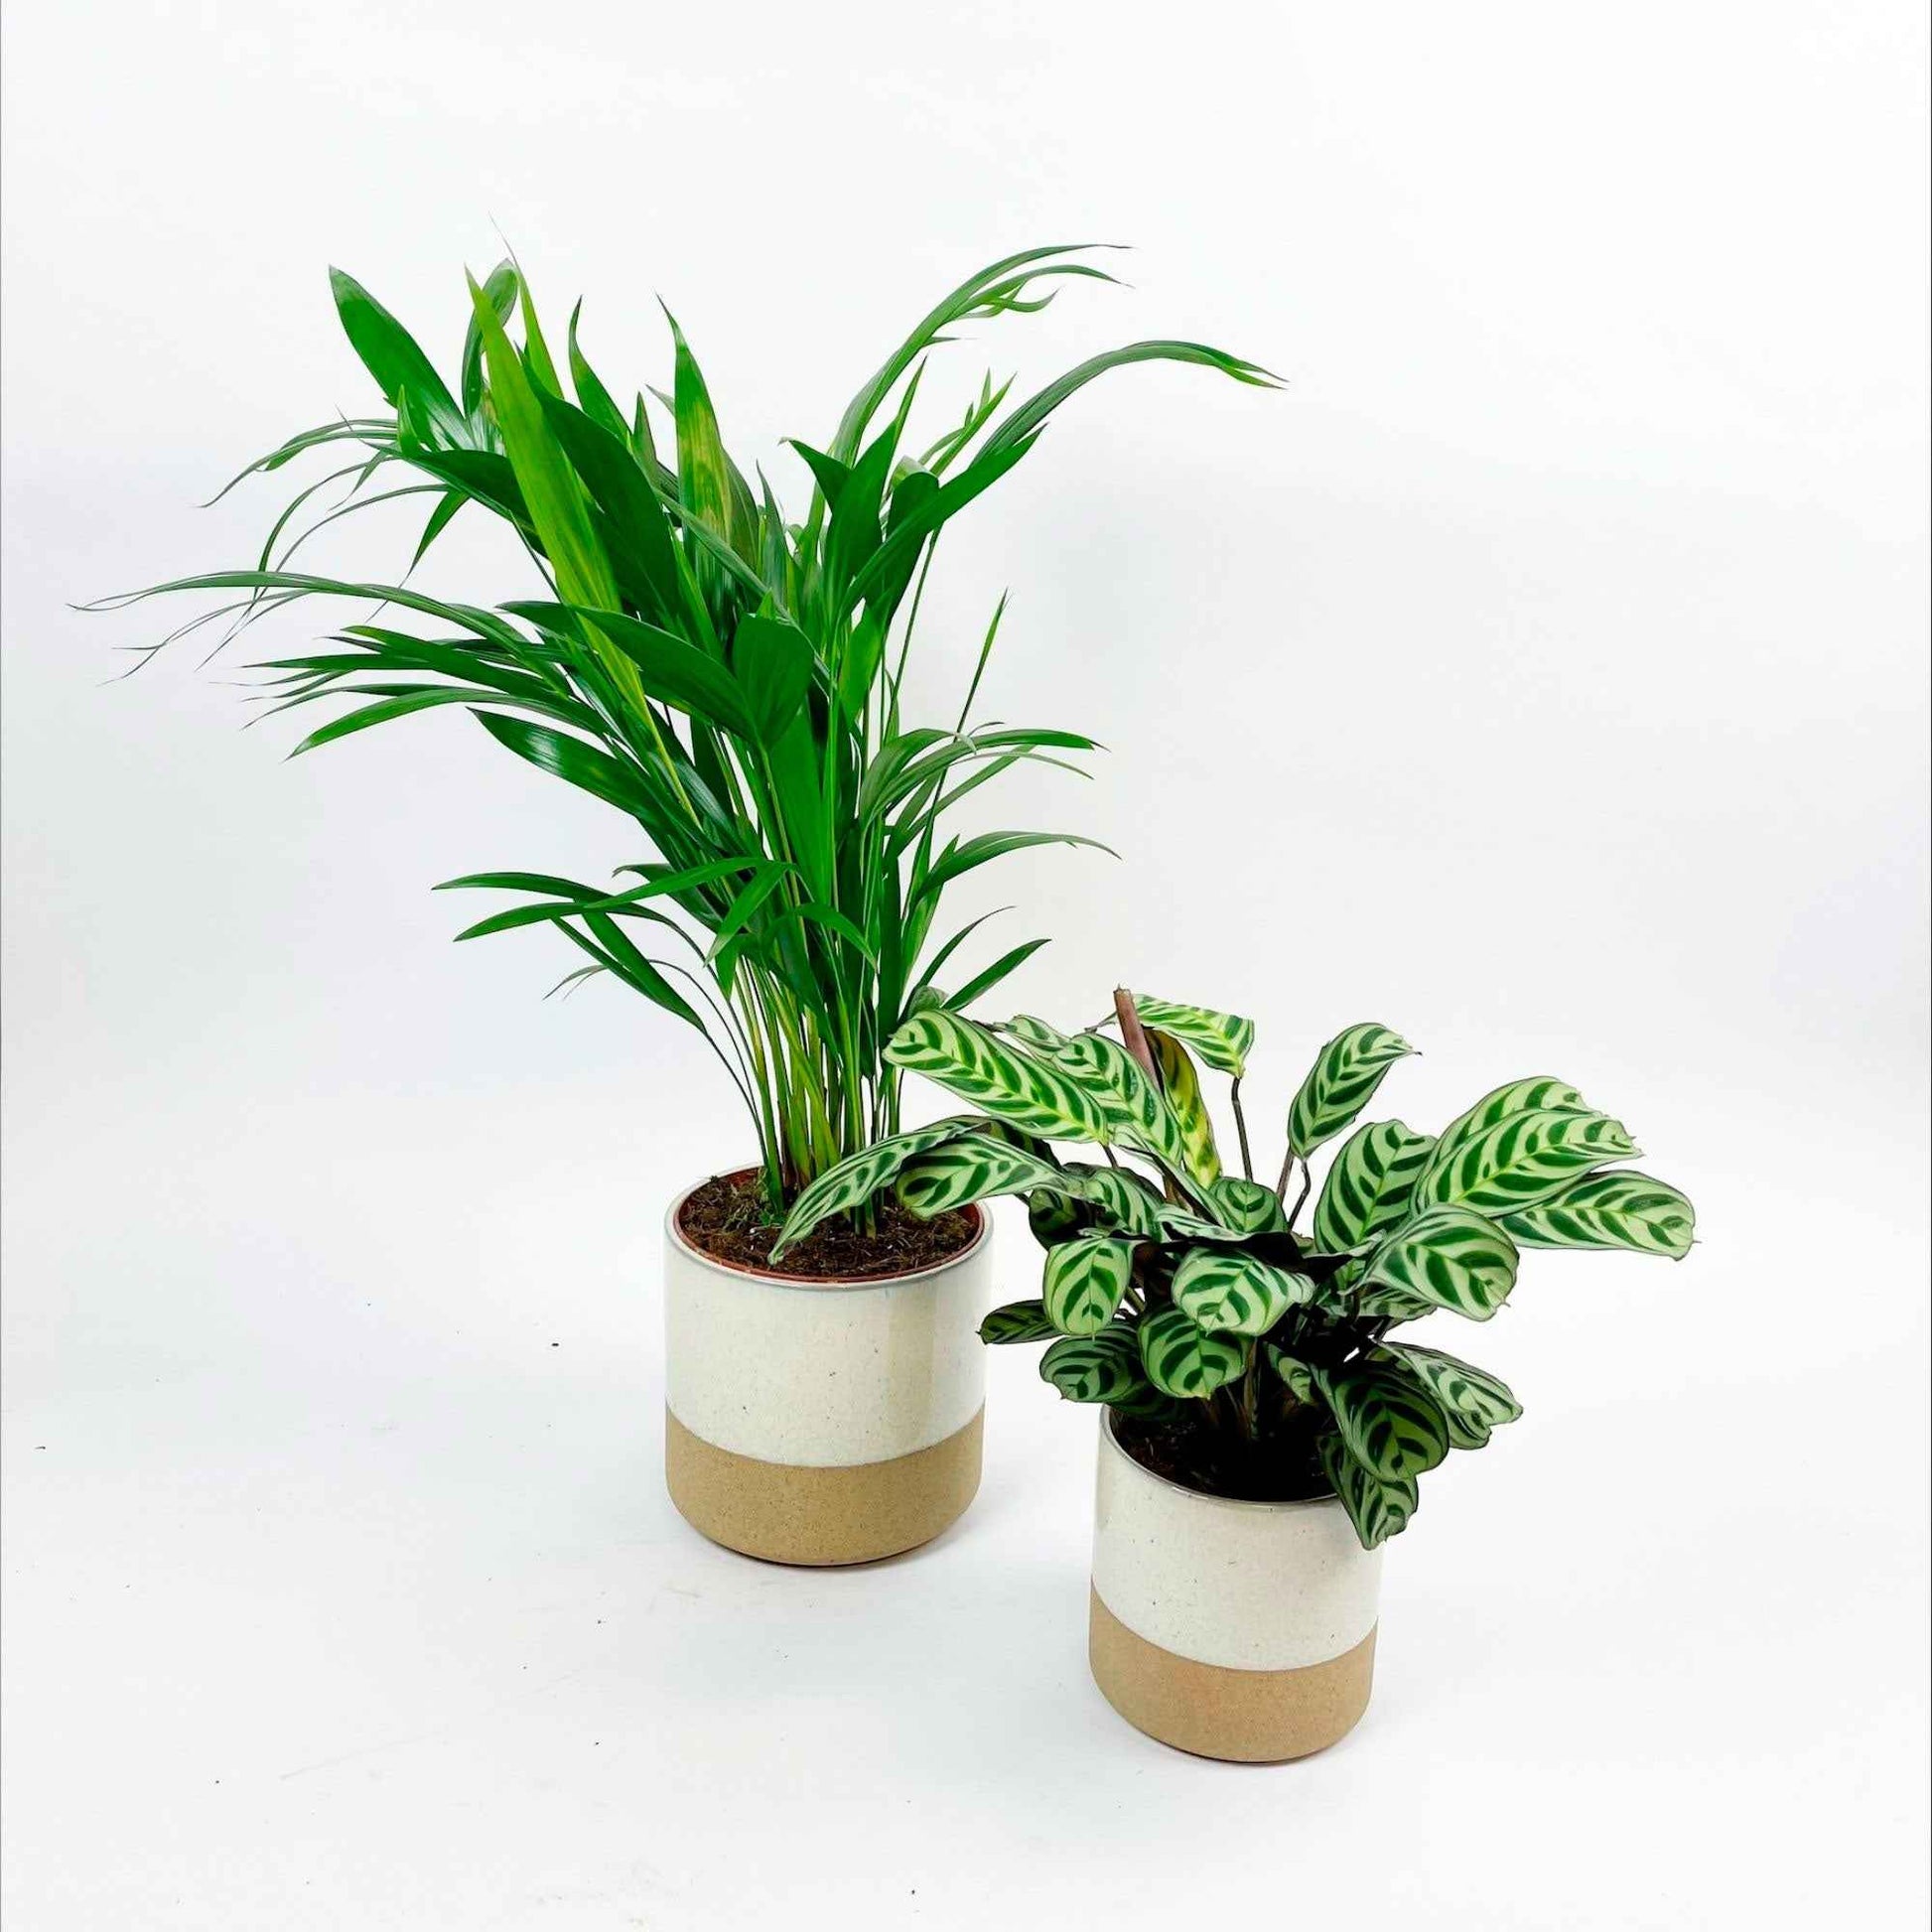 1x Palmier Areca Dypsis lutescens + 1x Plante de la prière avec cache-pots blancs - Ensembles de plantes d'intérieur